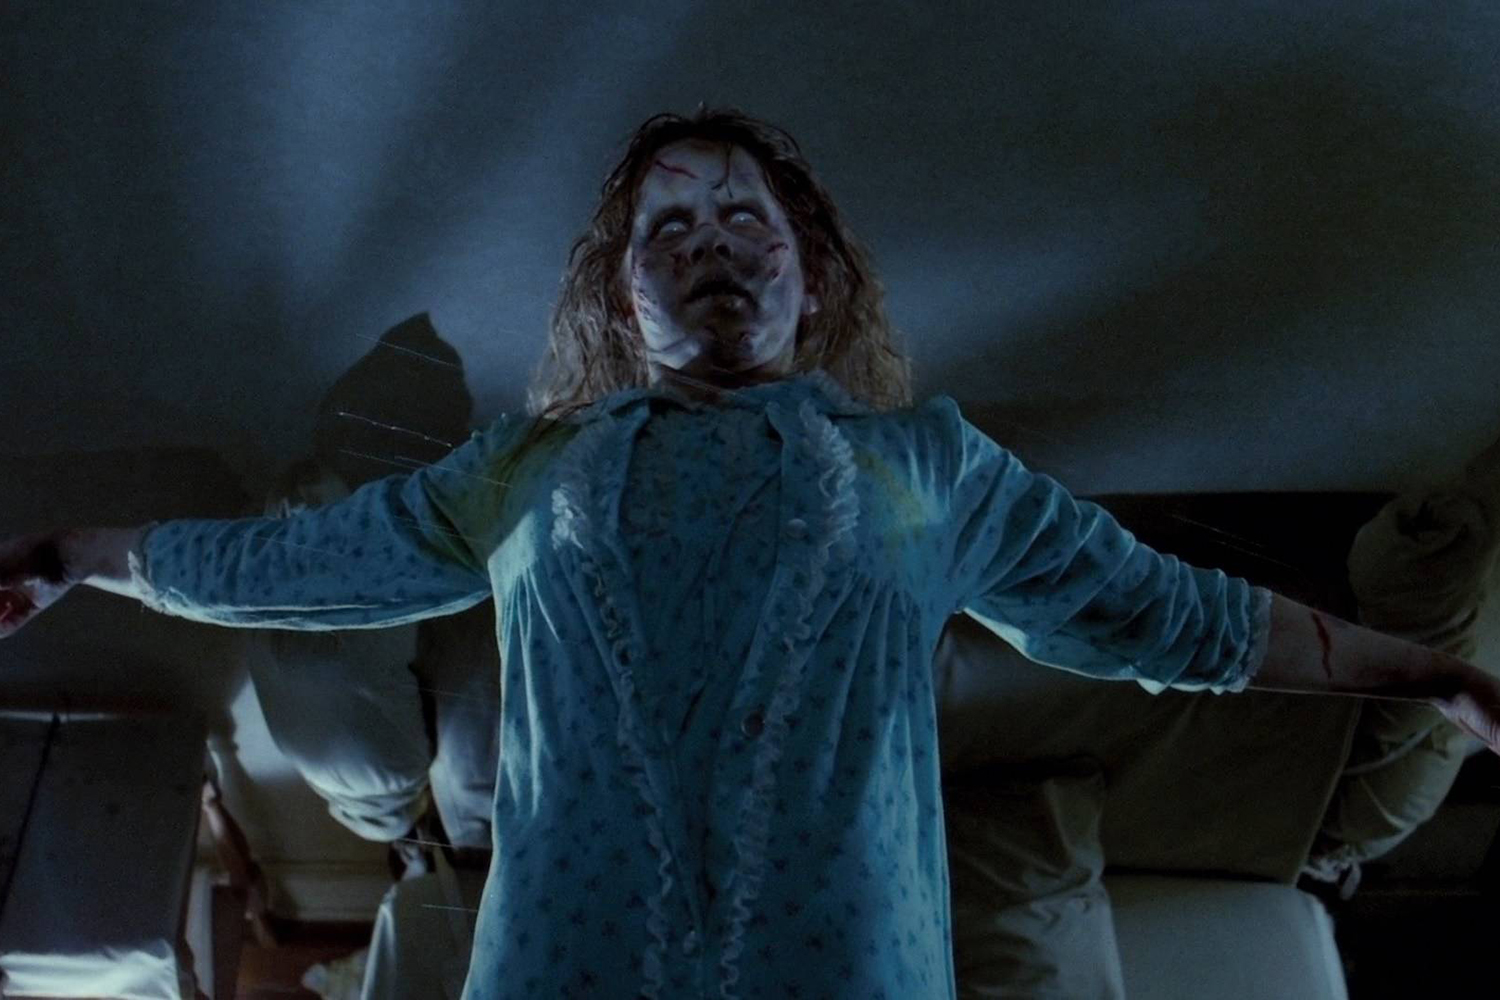 Regan levitando em "O Exorcista" (1973).